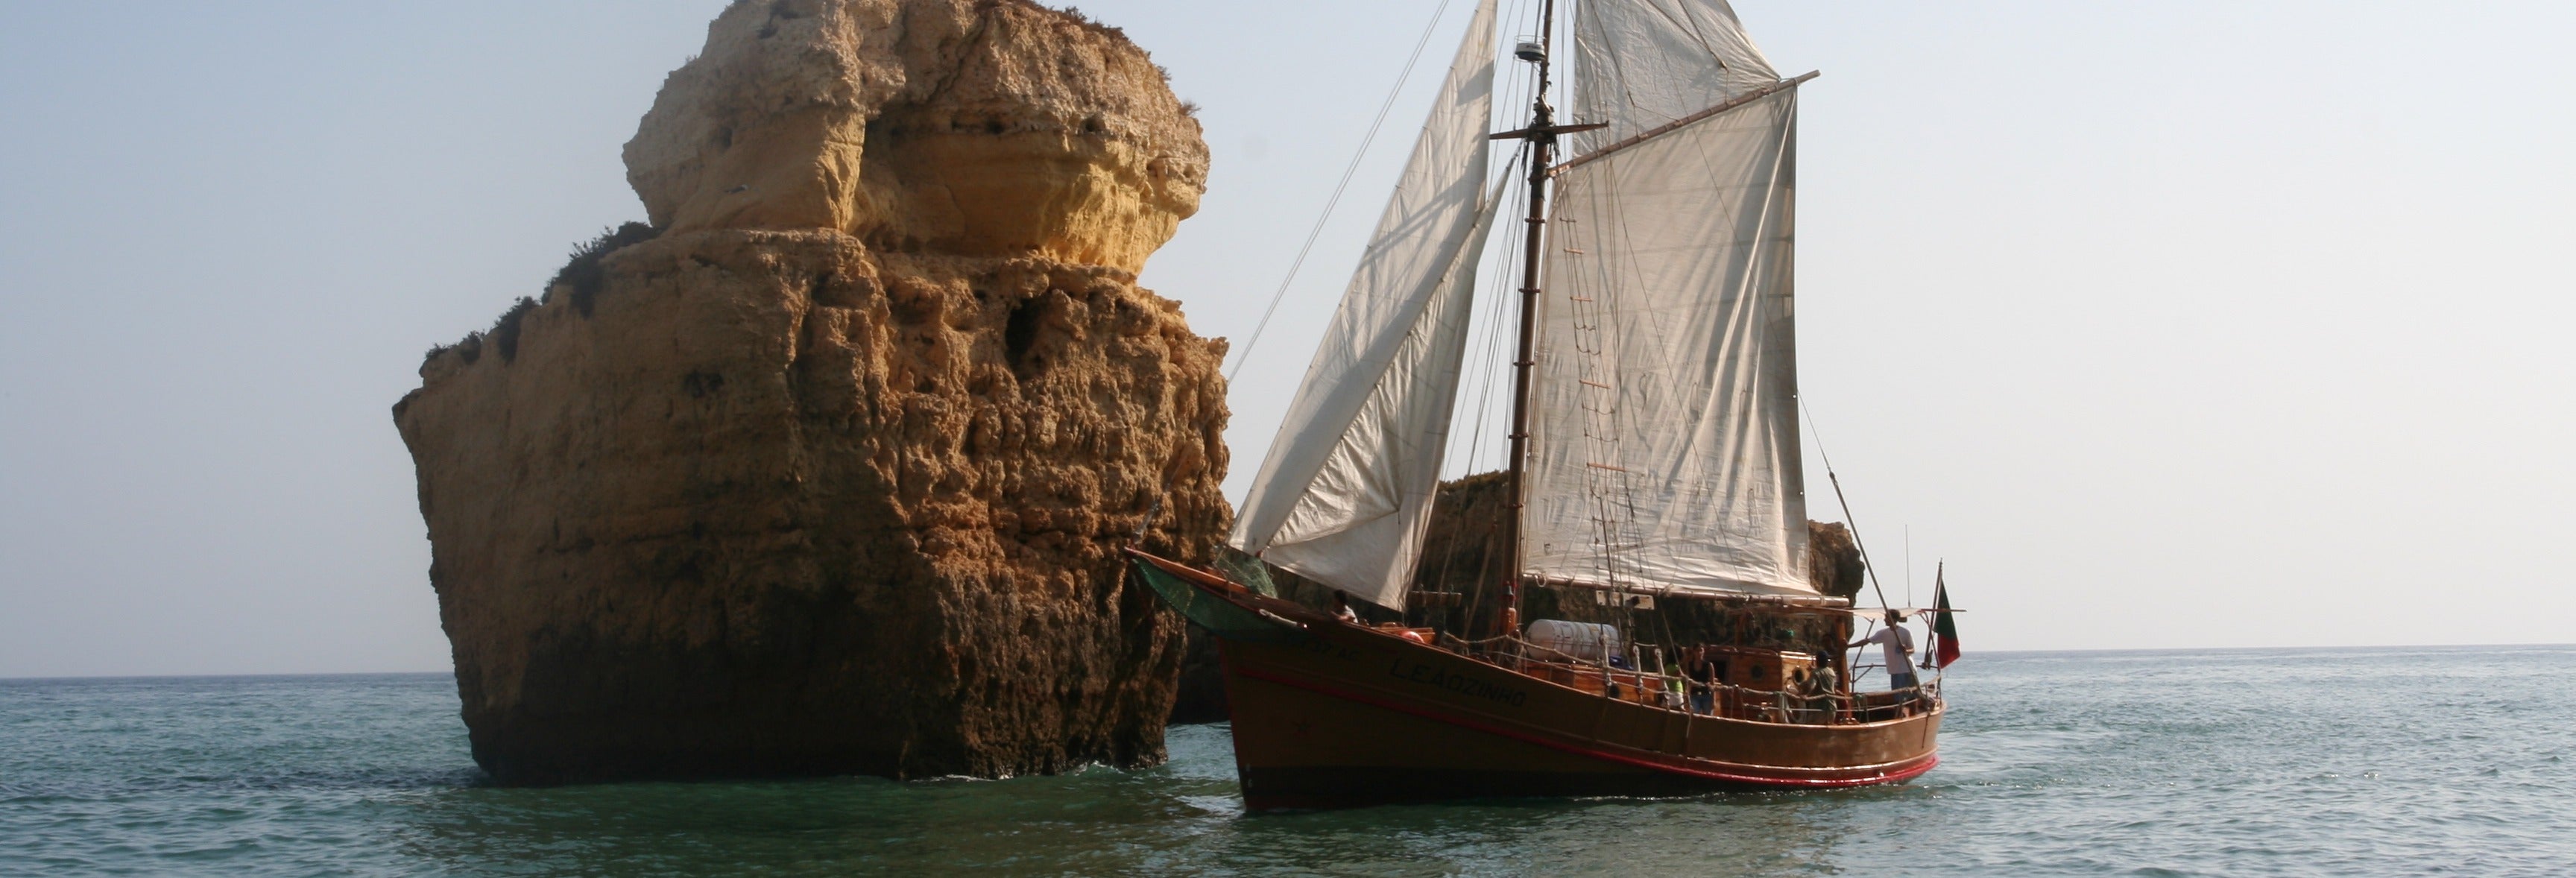 Cruzeiro e churrasco em um barco pirata